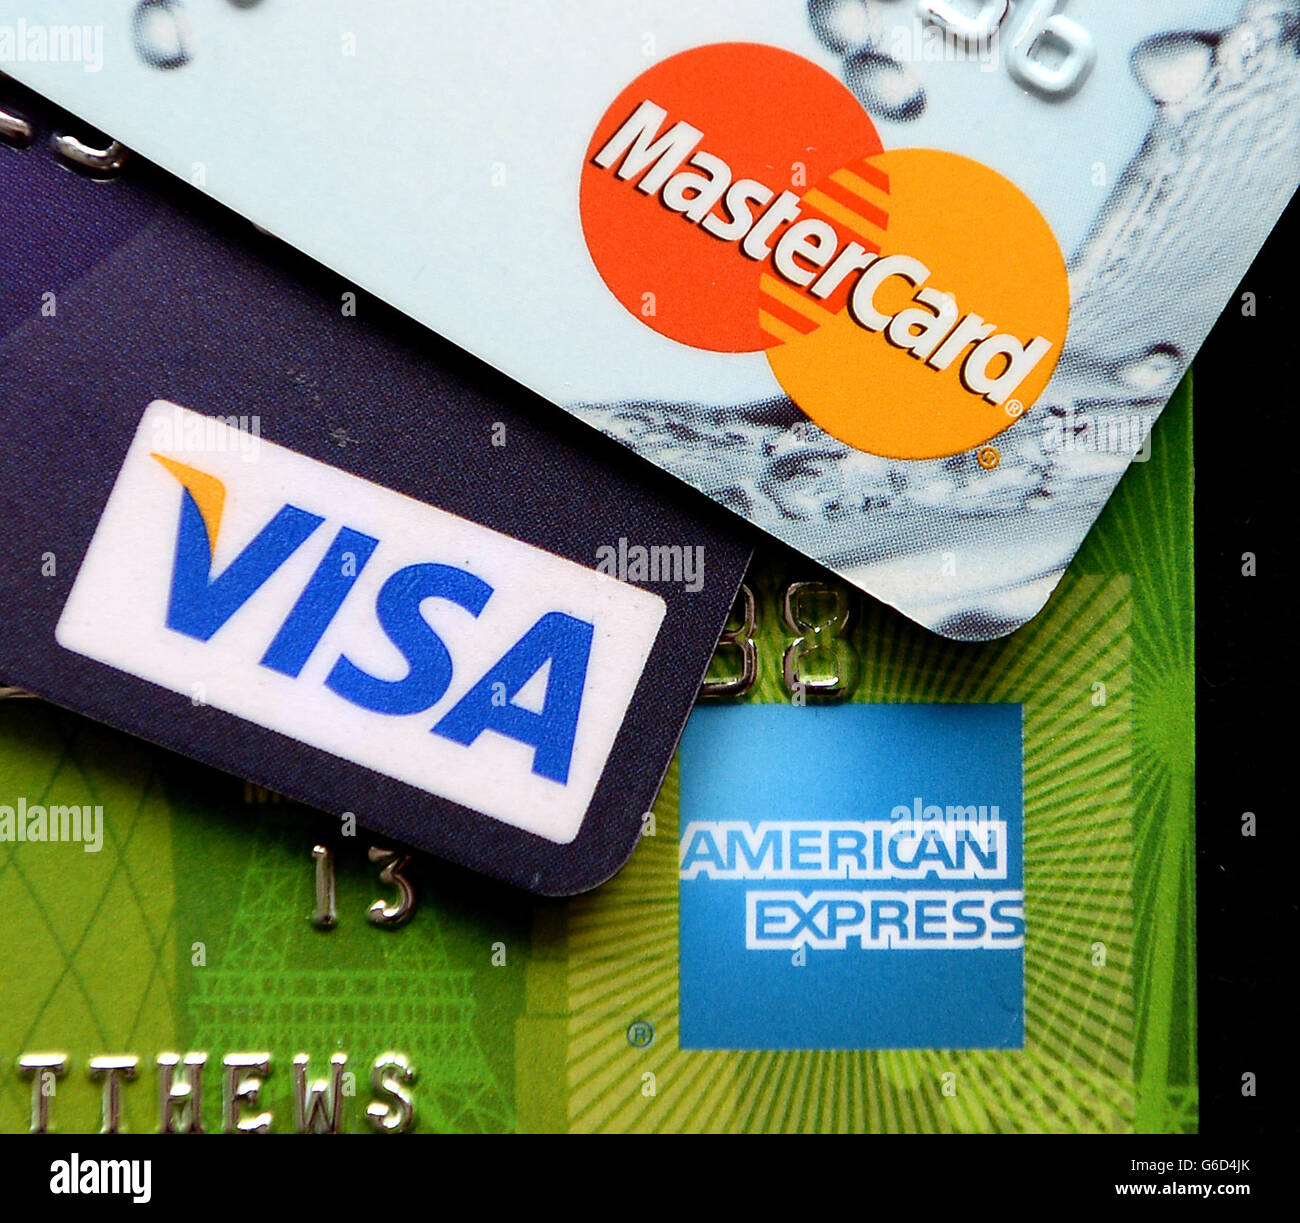 Vista general de una Visa, una MasterCard y una tarjeta de crédito American Express una junto a la otra Foto de stock